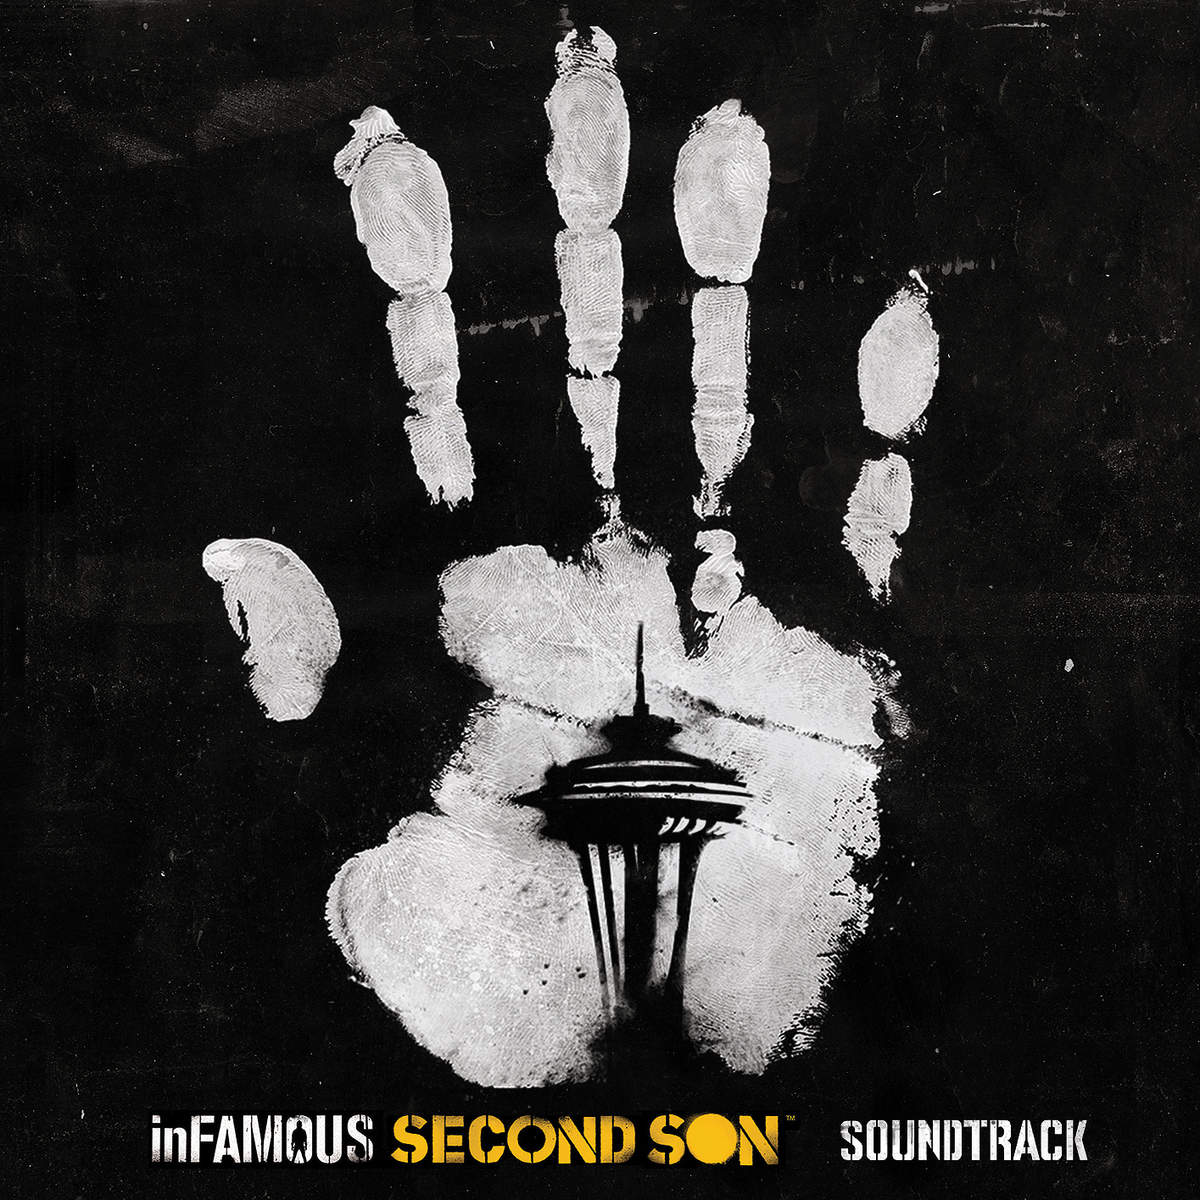 inFamous_Second_Son_Original_Soundtrack__cover1200x1200.jpeg